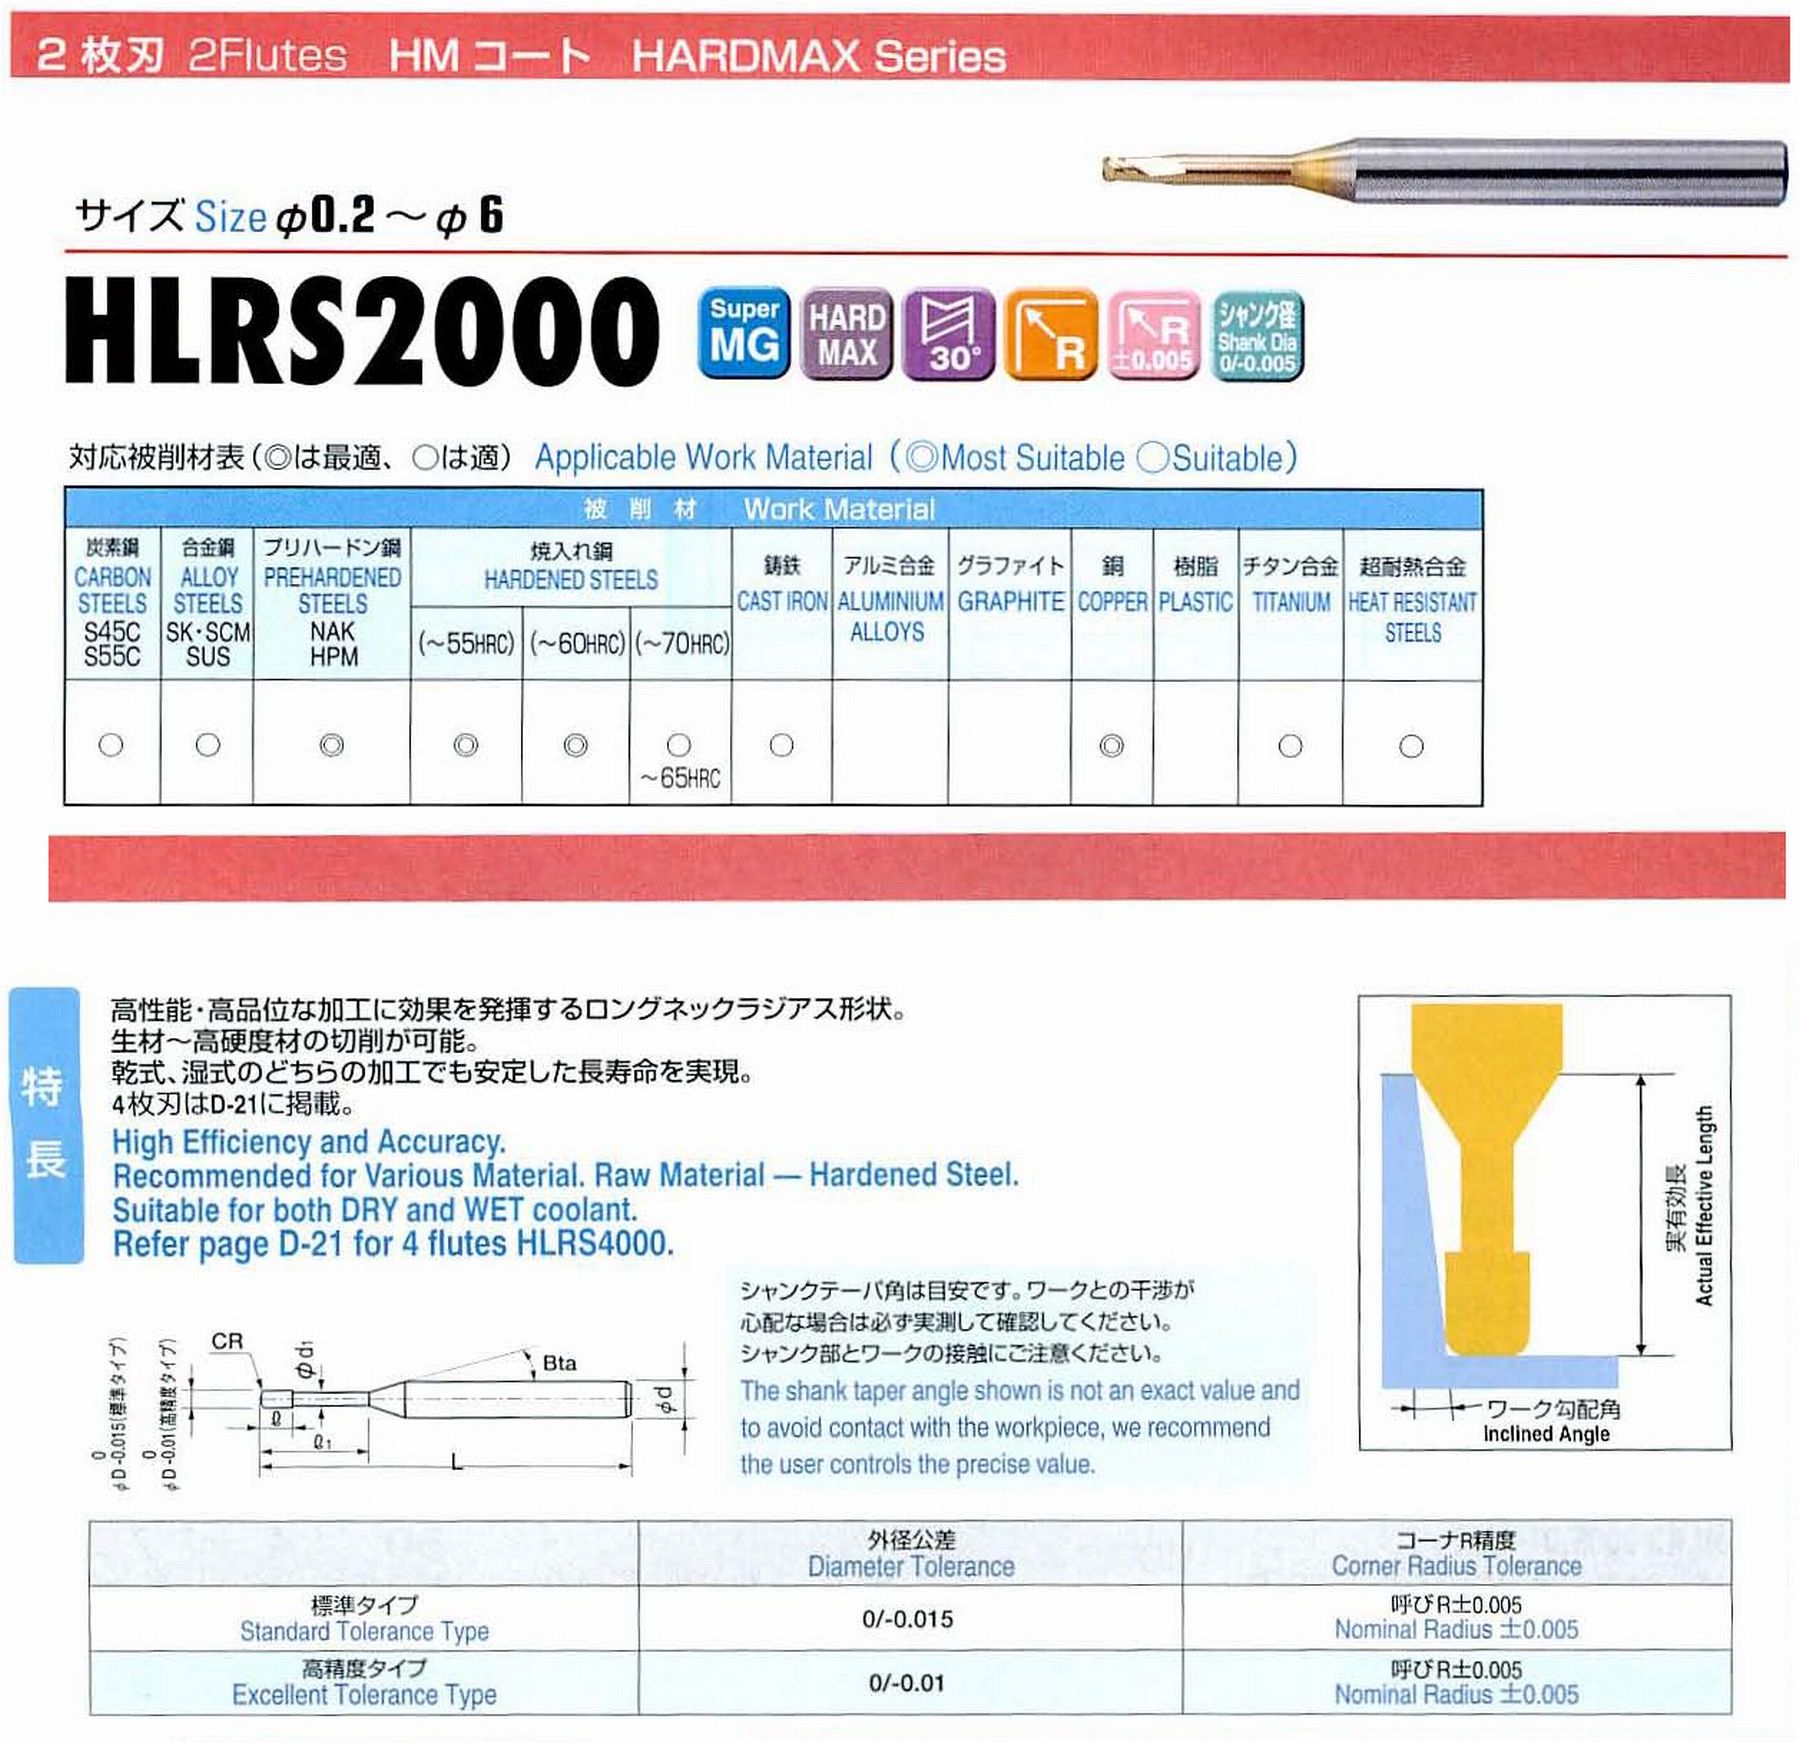 ユニオンツール 2枚刃 HLRS2005-005-020 外径0.5 コーナ半径R0.05 有効長2 刃長0.5 首径0.48 シャンクテーパ角16° 全長50 シャンク径4